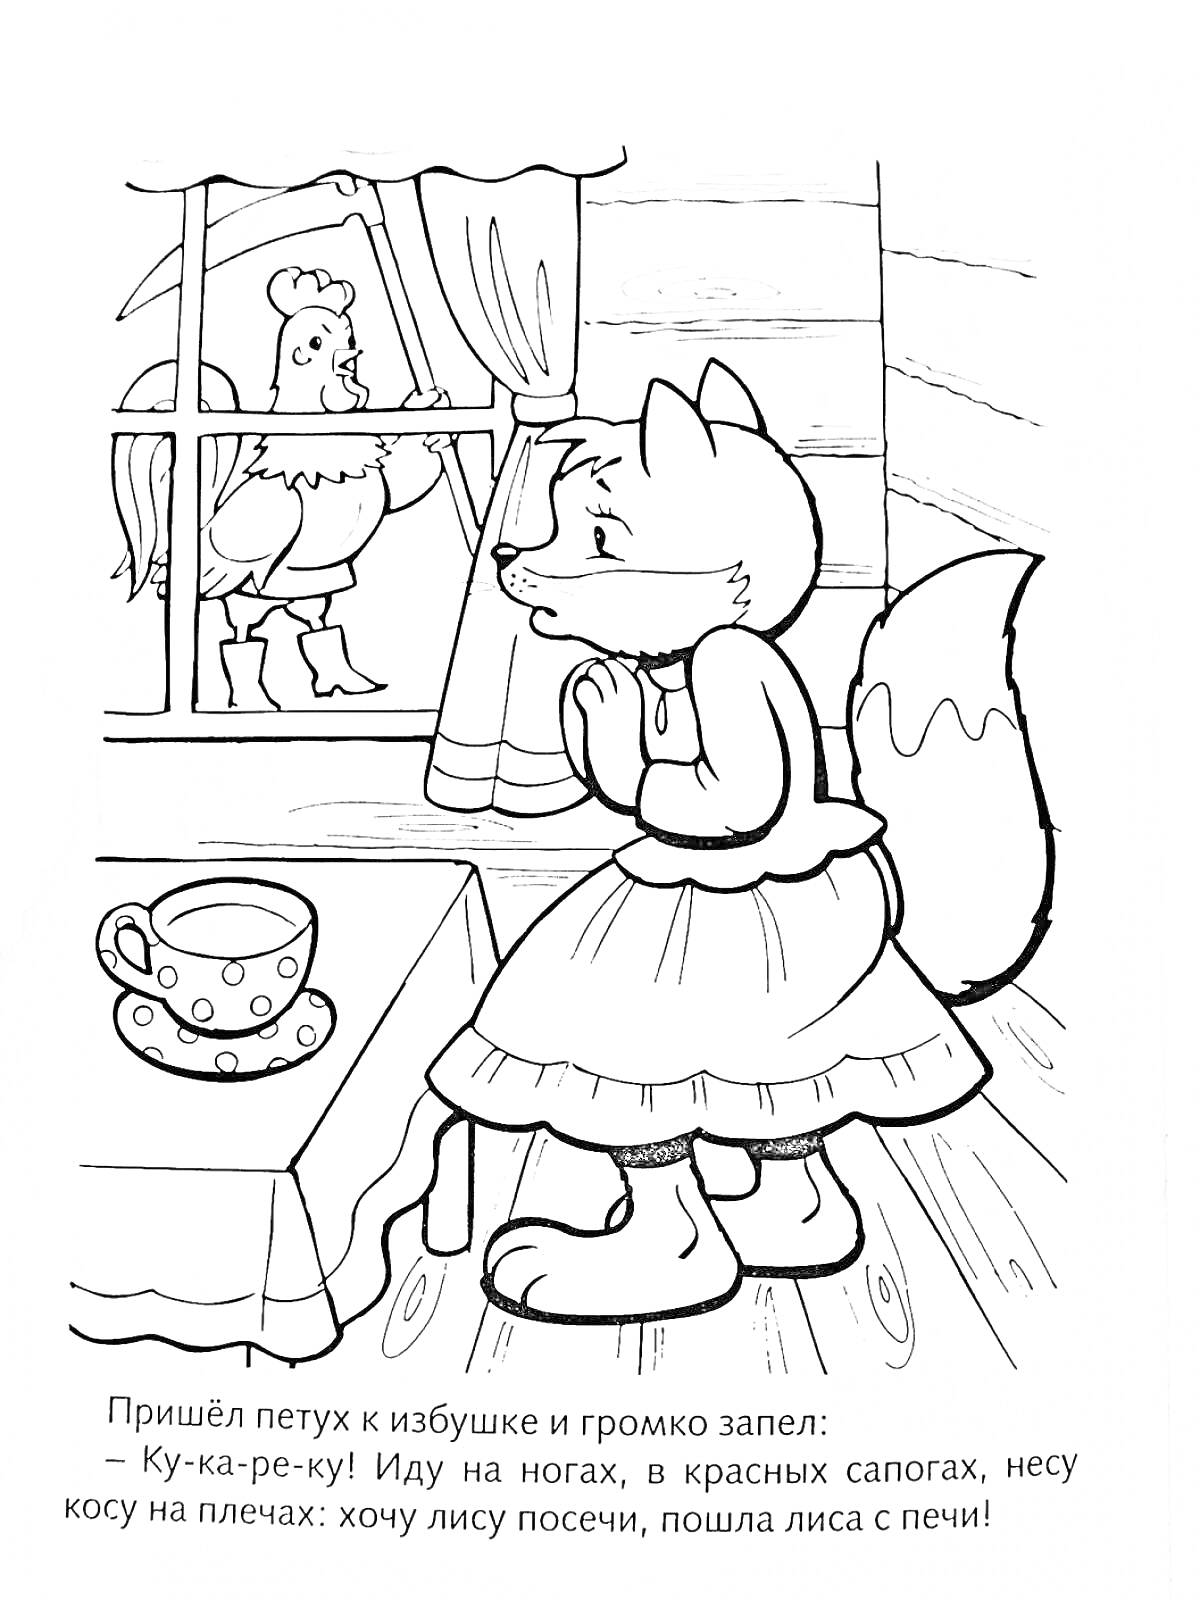 Раскраска Лиса в платье дома с чашкой на столе при приходе петуха к окну